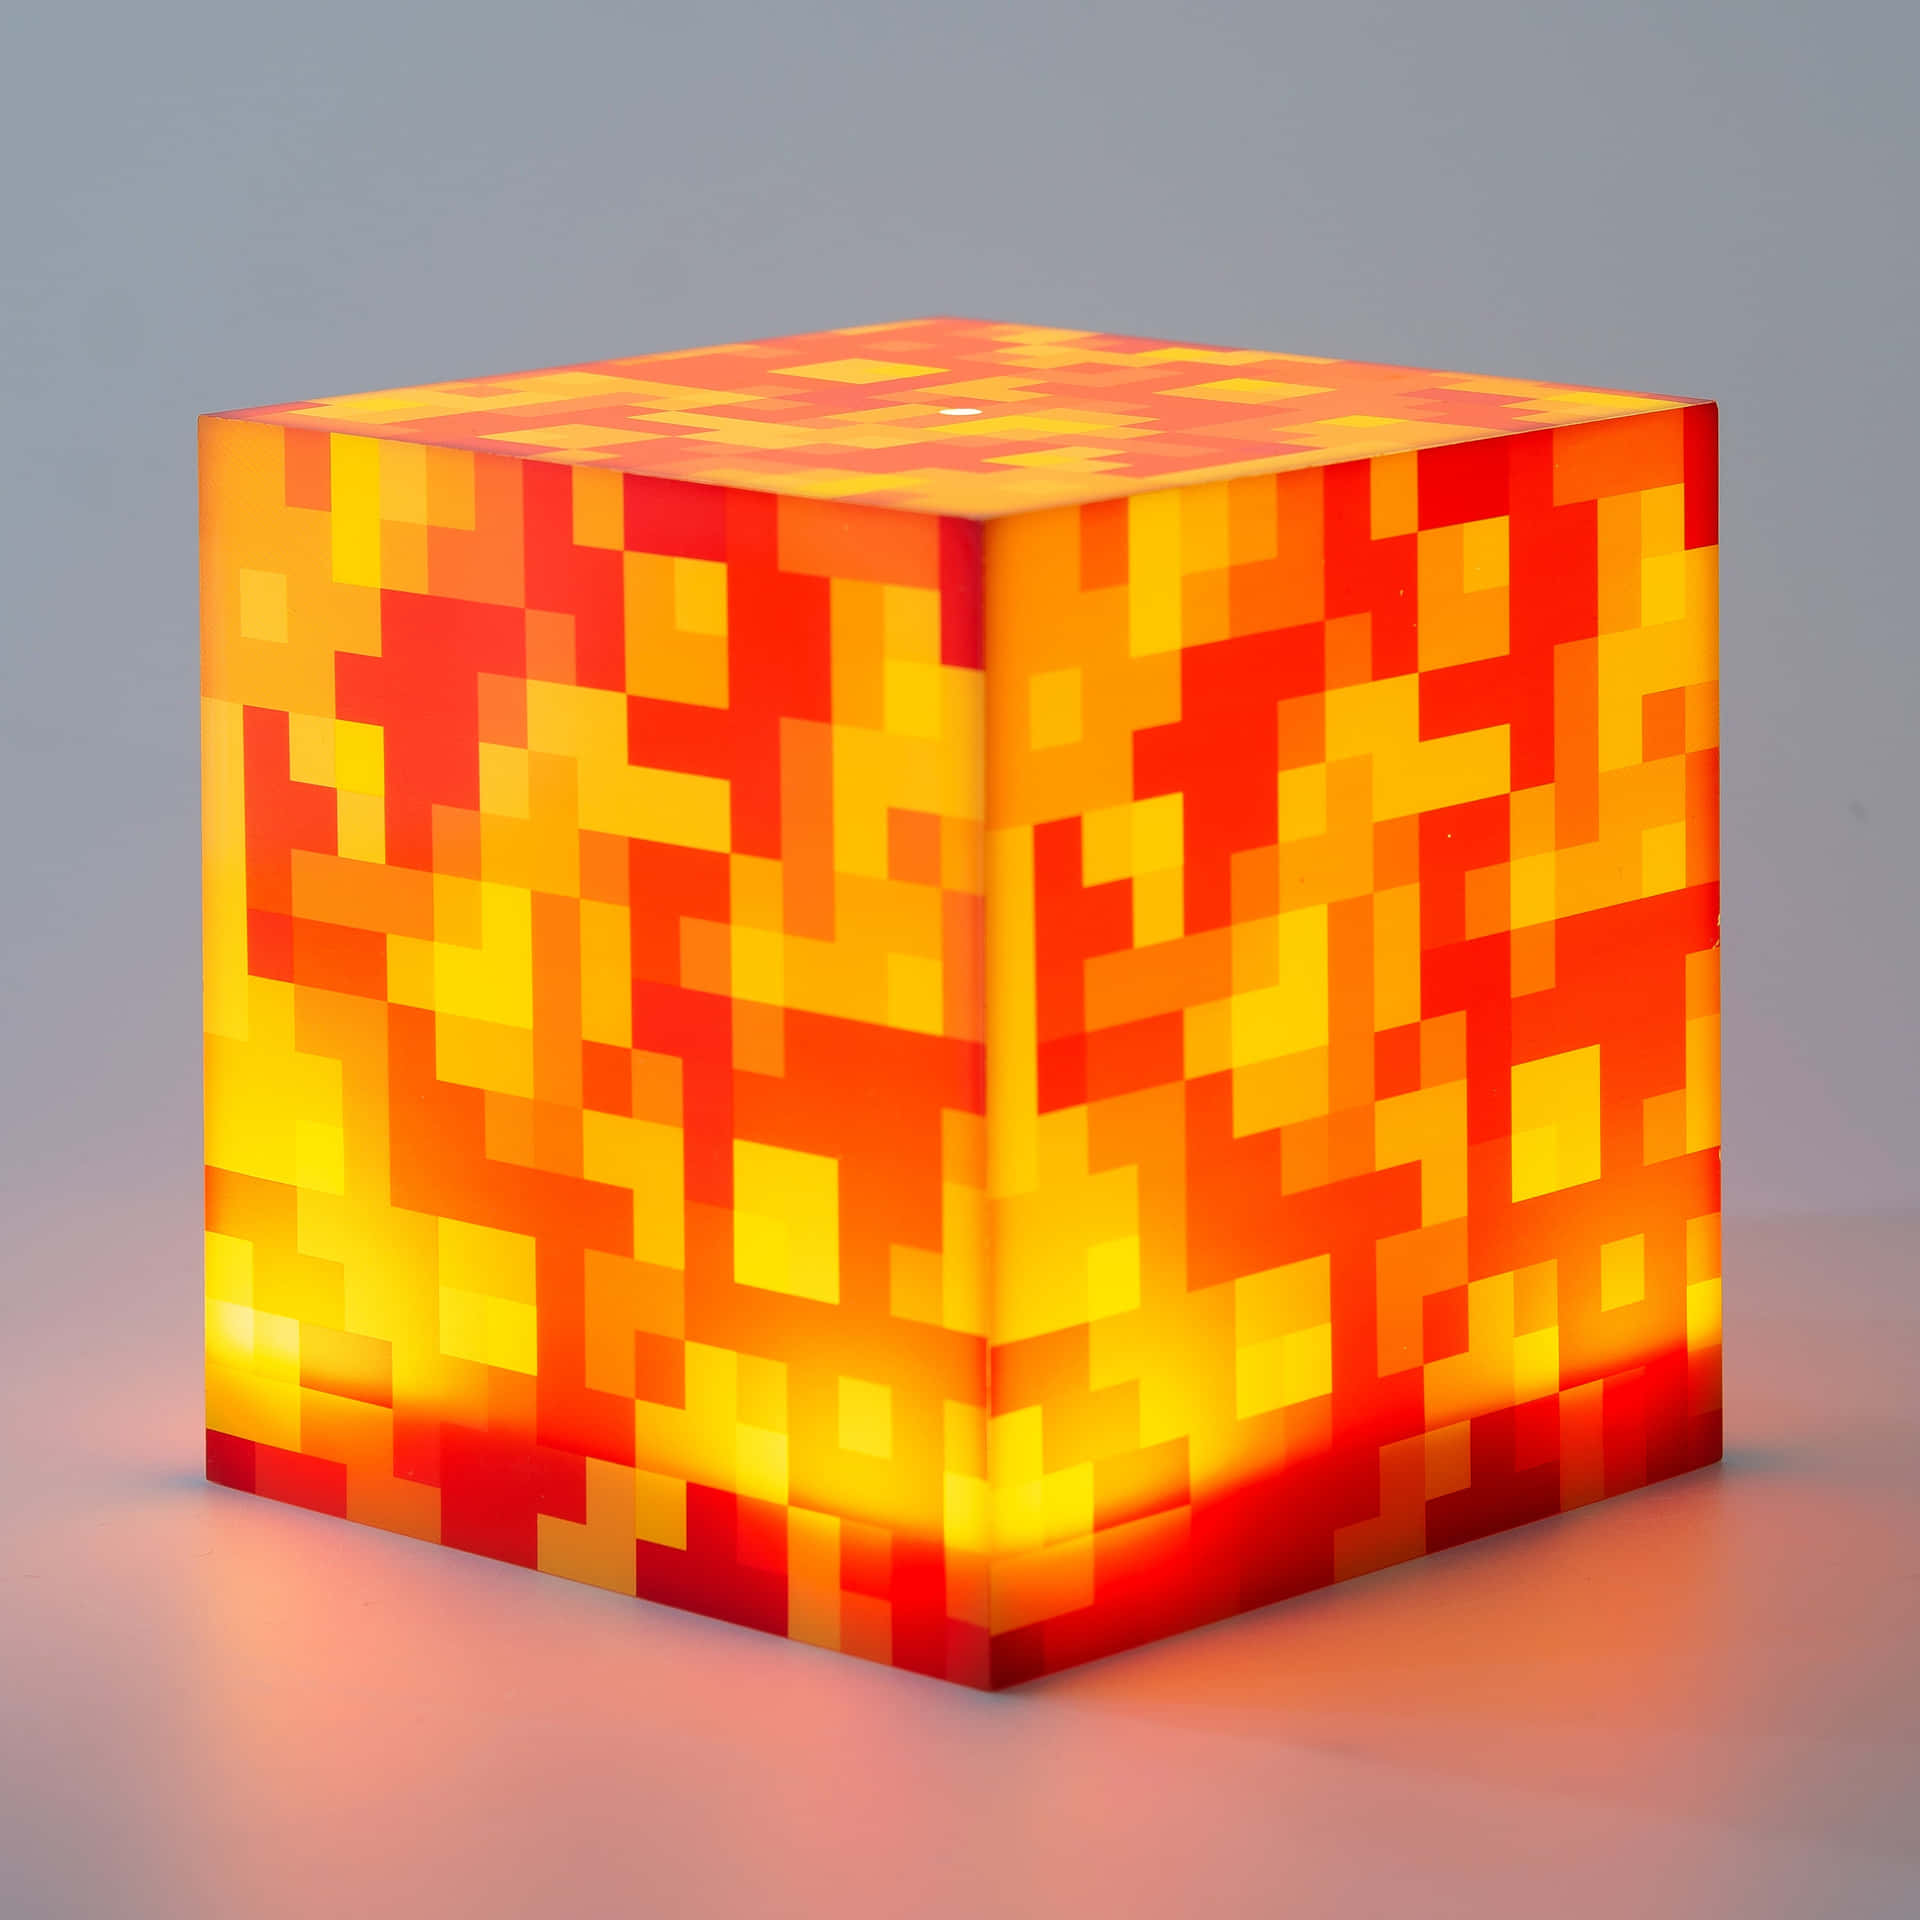 Lampadaa Forma Di Cubo Infuocato Di Minecraft